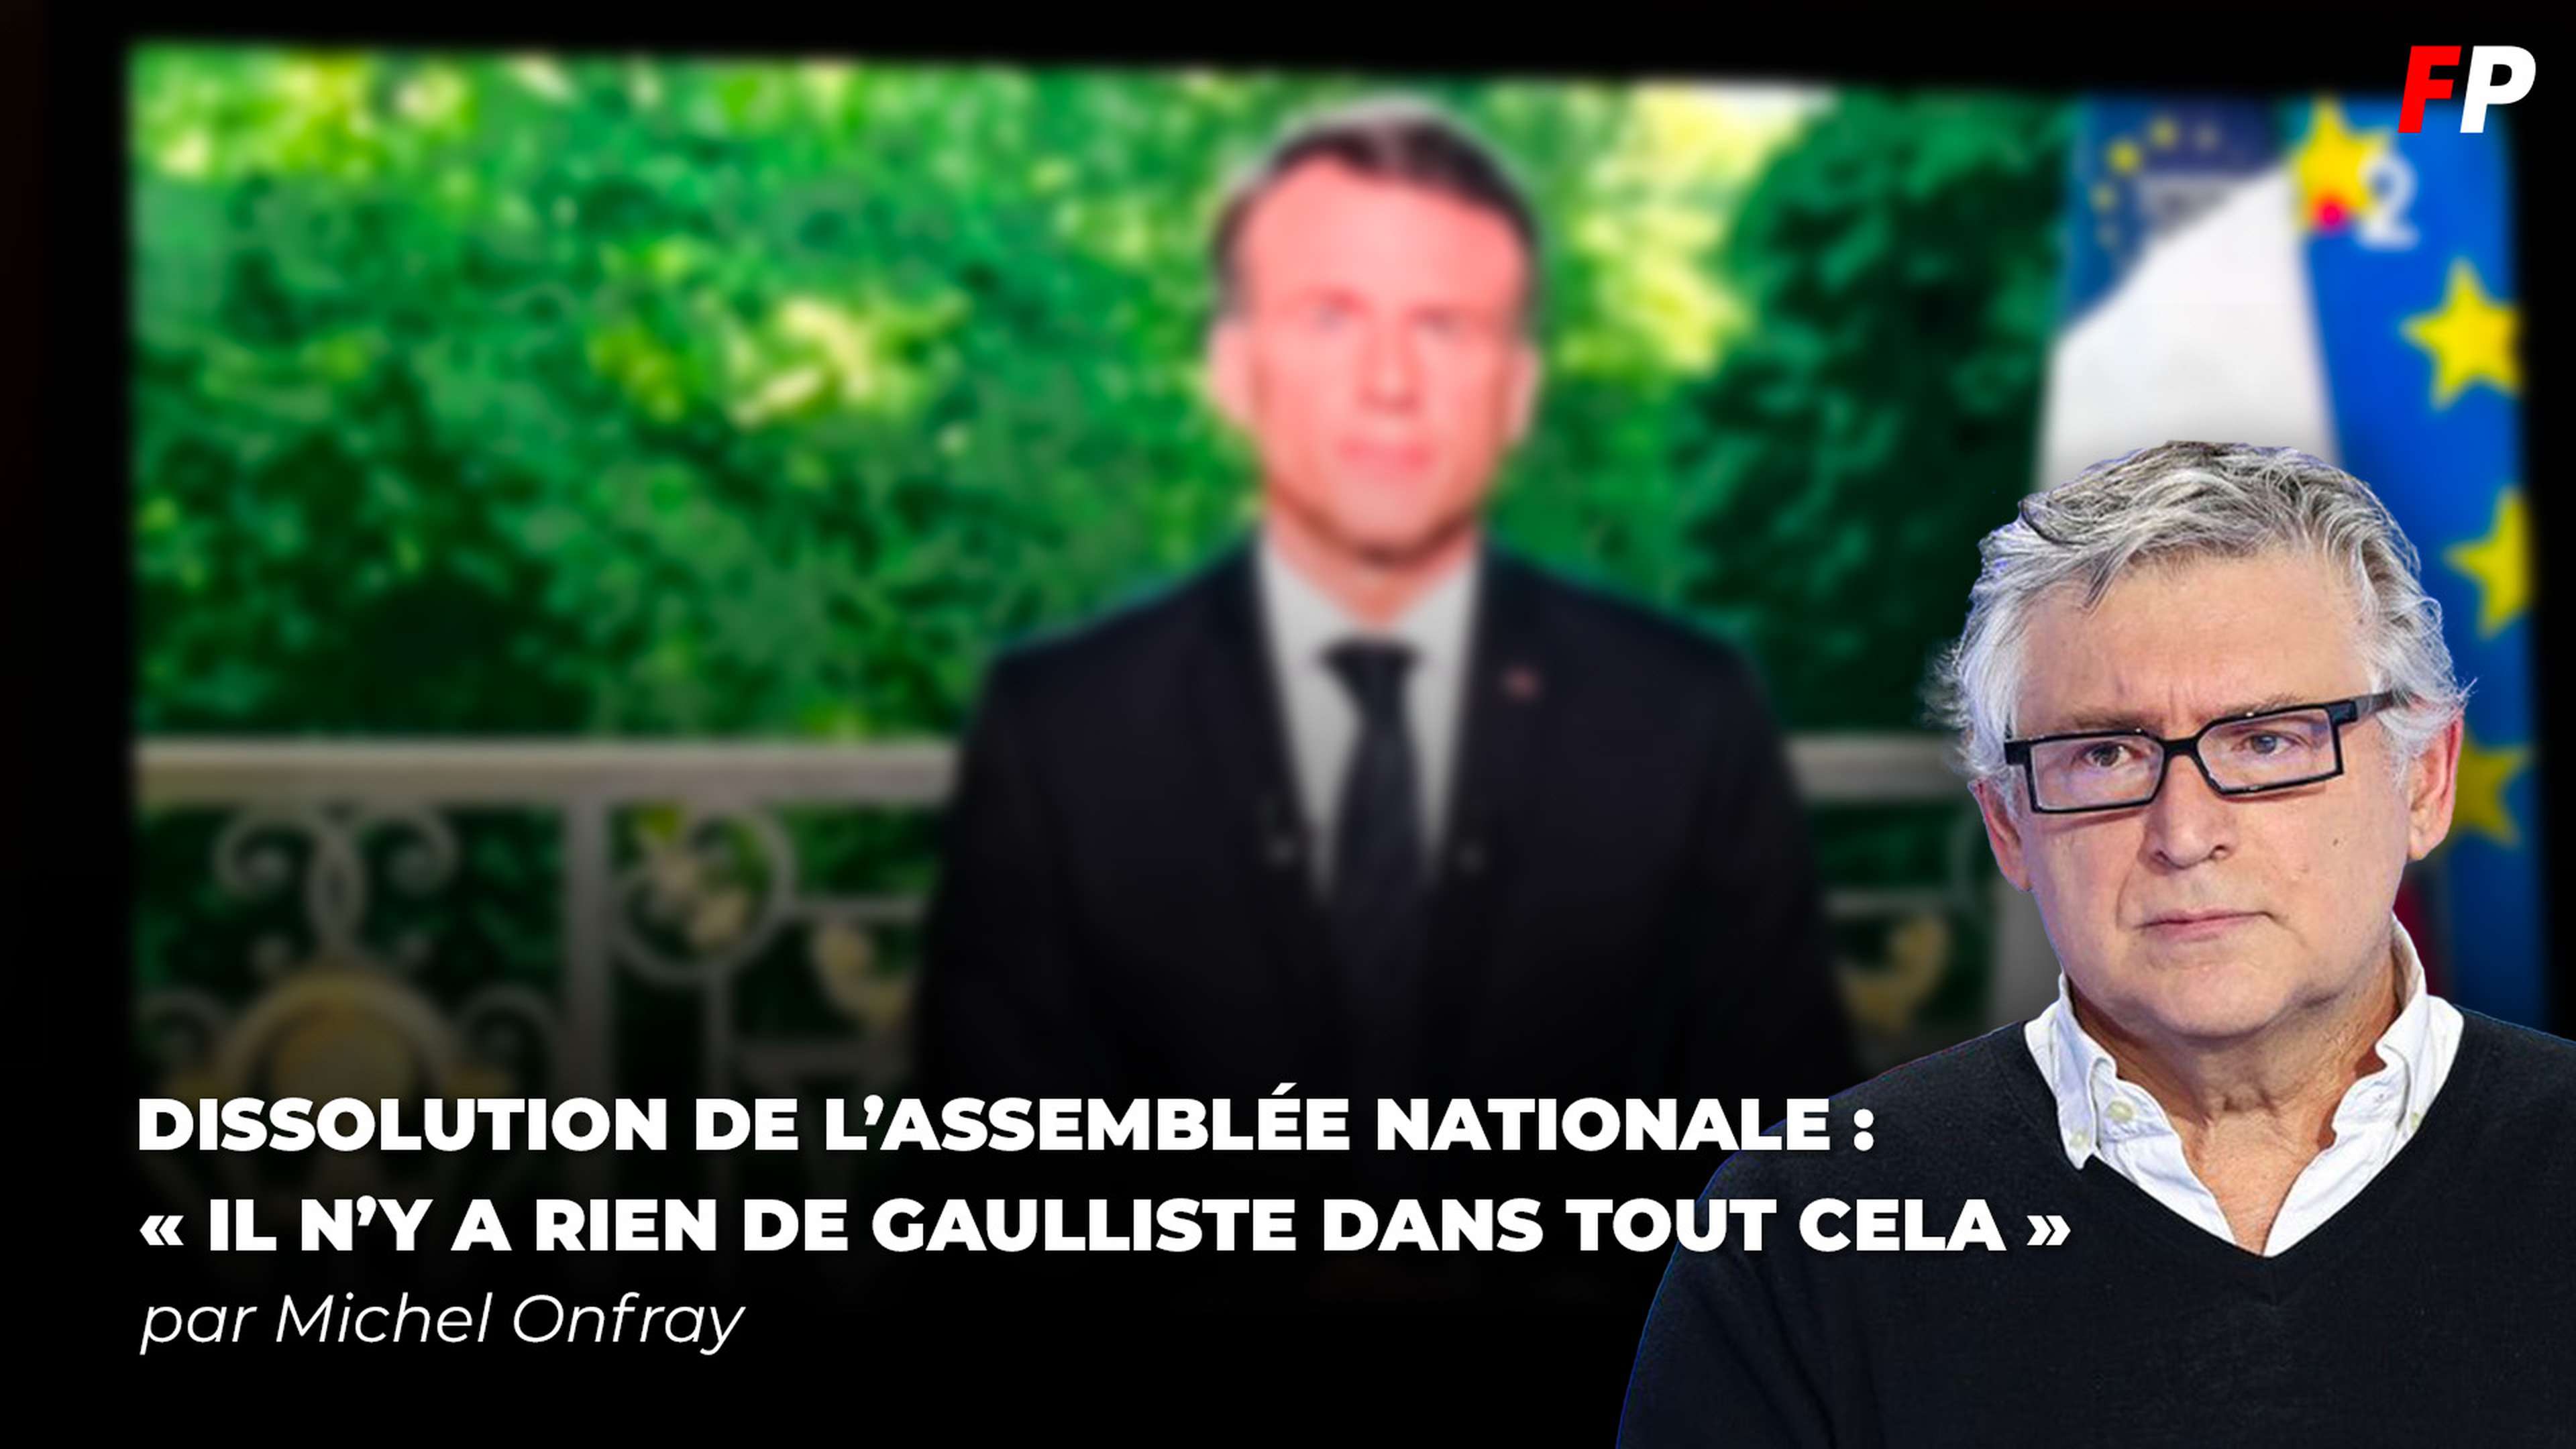 Dissolution de l'Assemblée nationale : la réaction de Michel Onfray